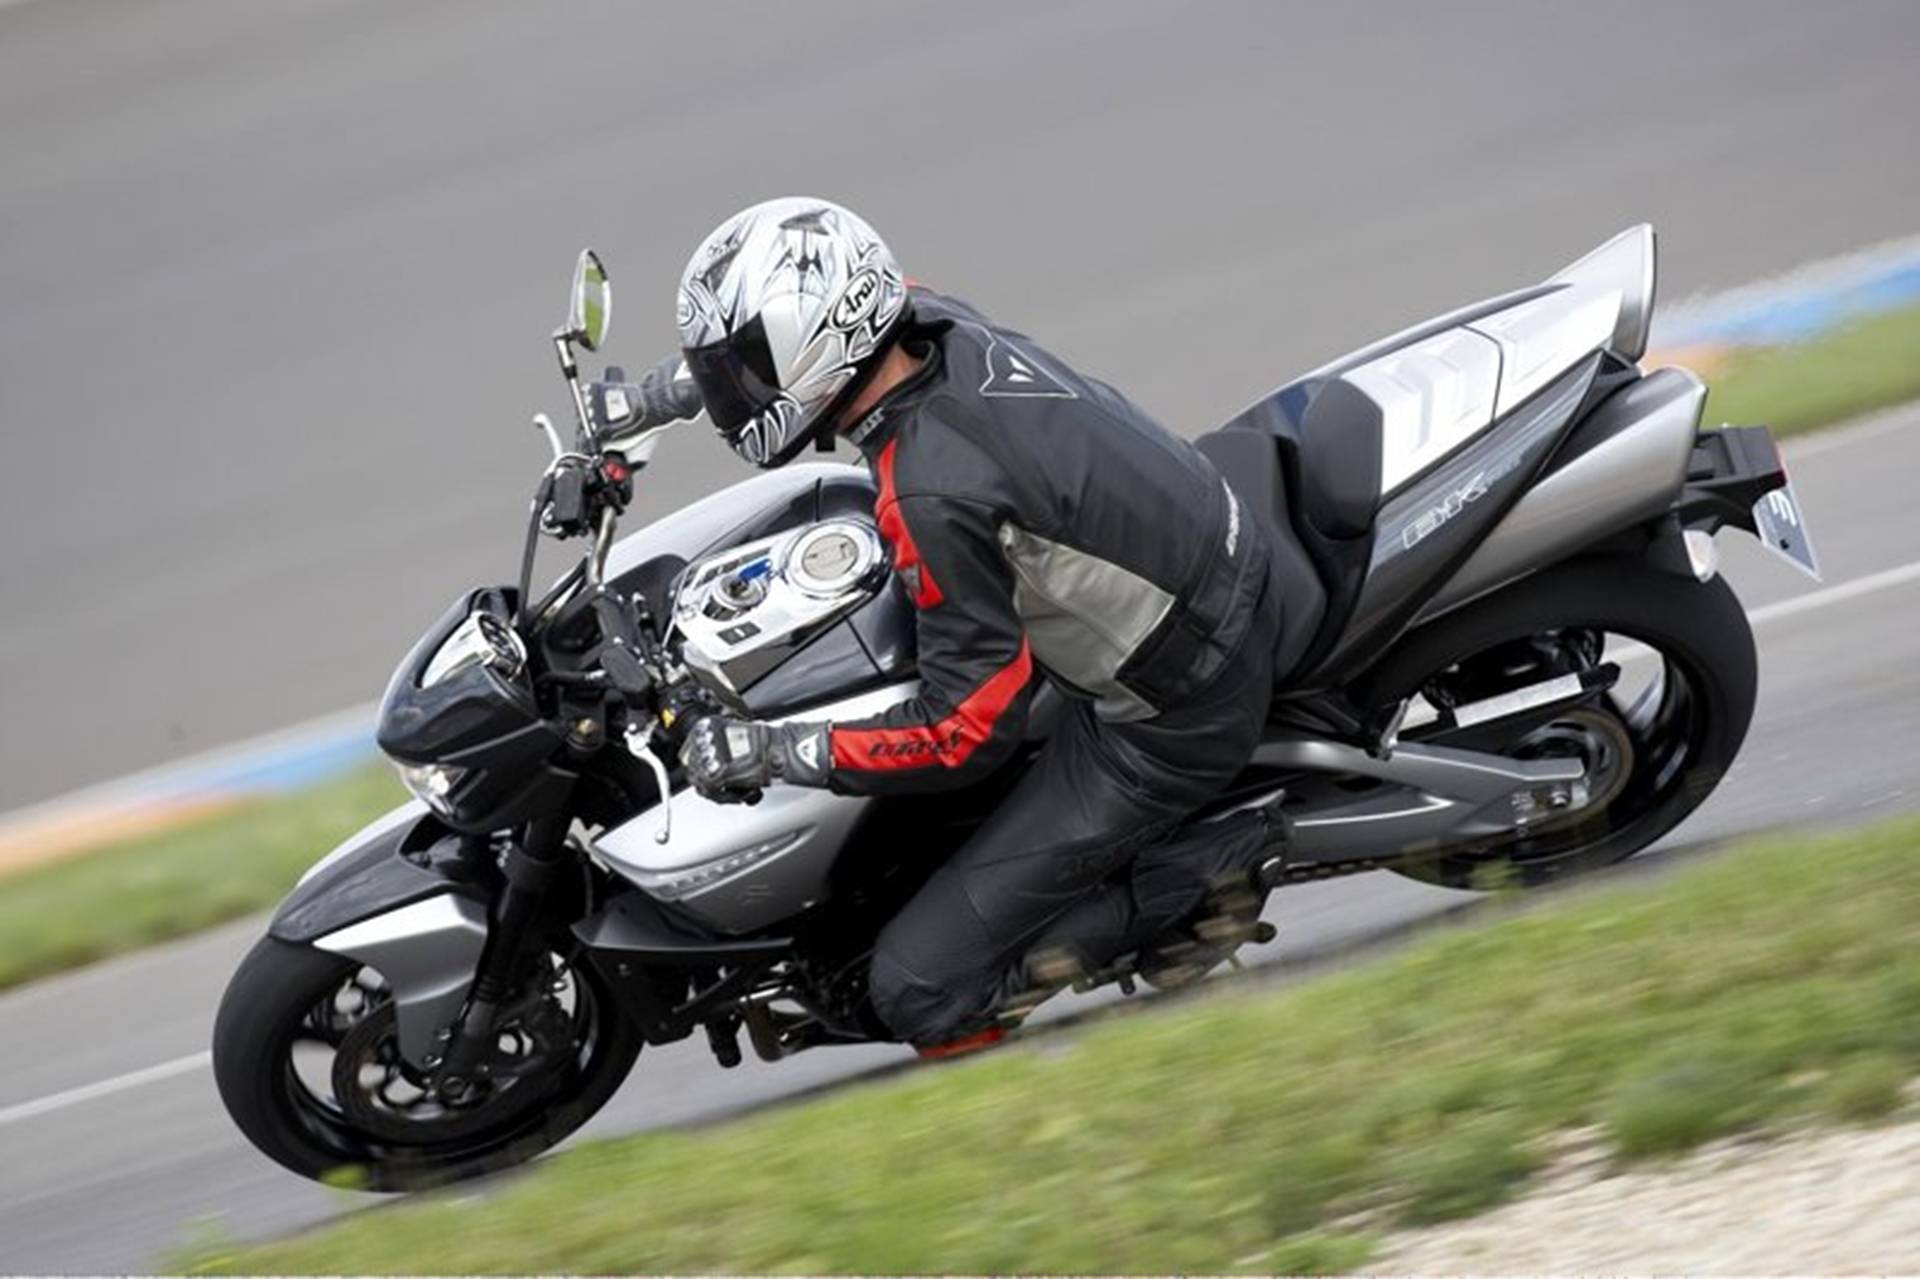 ✅ тест-драйв мотоцикла tm en 300, путешествия на мотоцикле и не только - craitbikes.ru